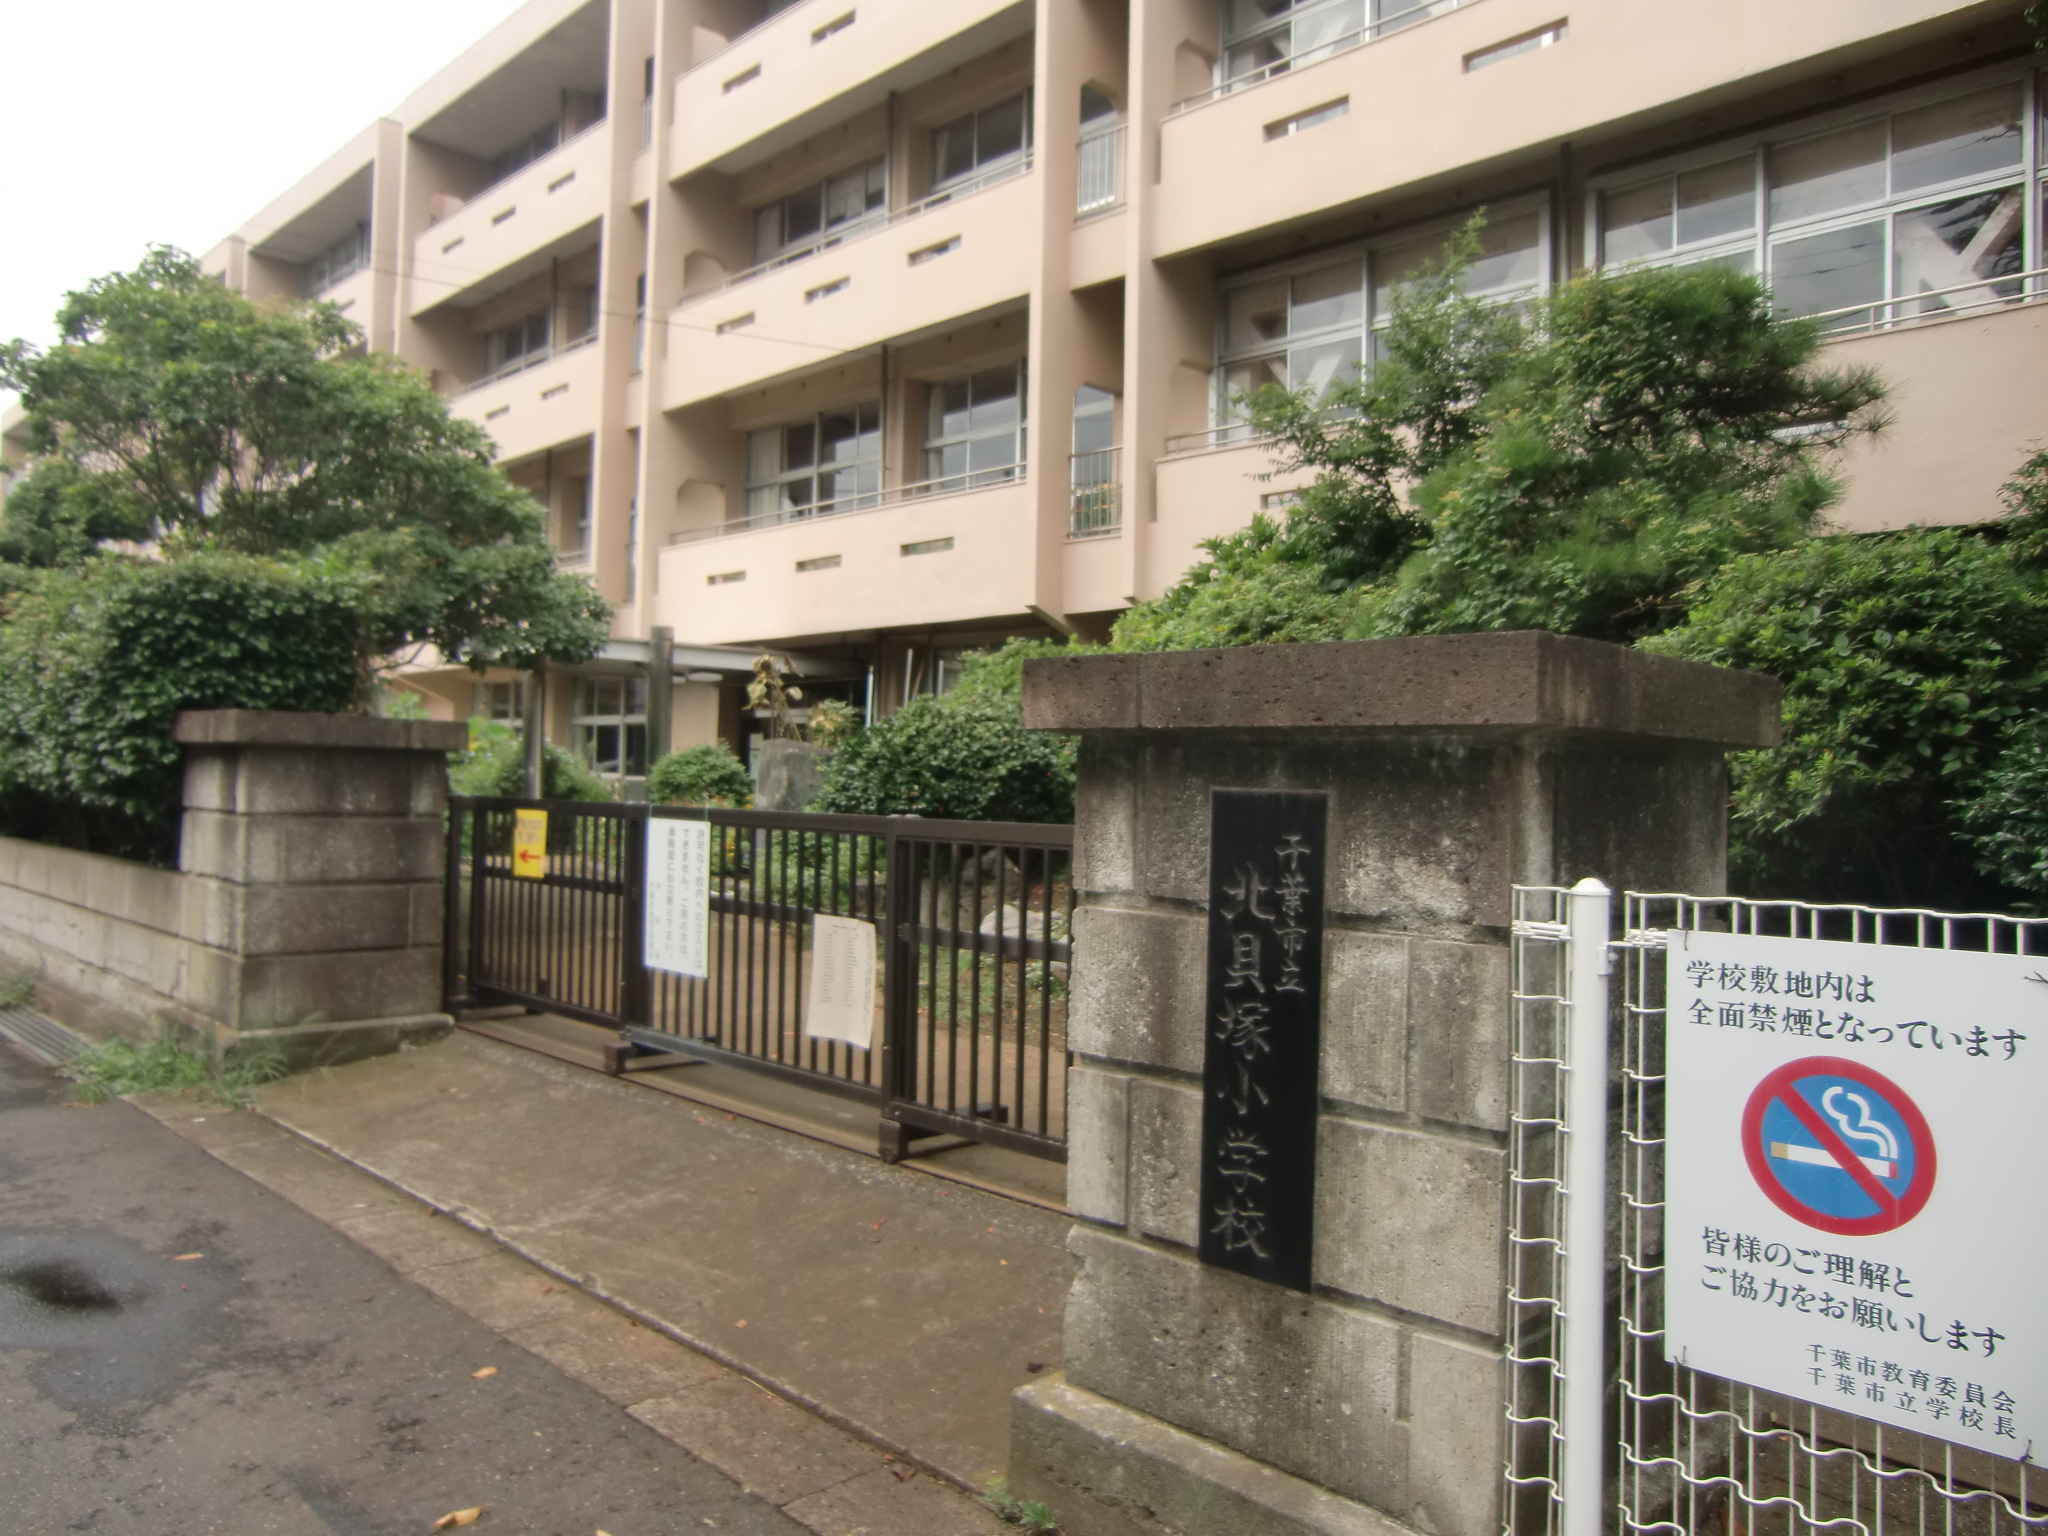 Primary school. 498m to Chiba City Tatsukita Kaizuka elementary school (elementary school)